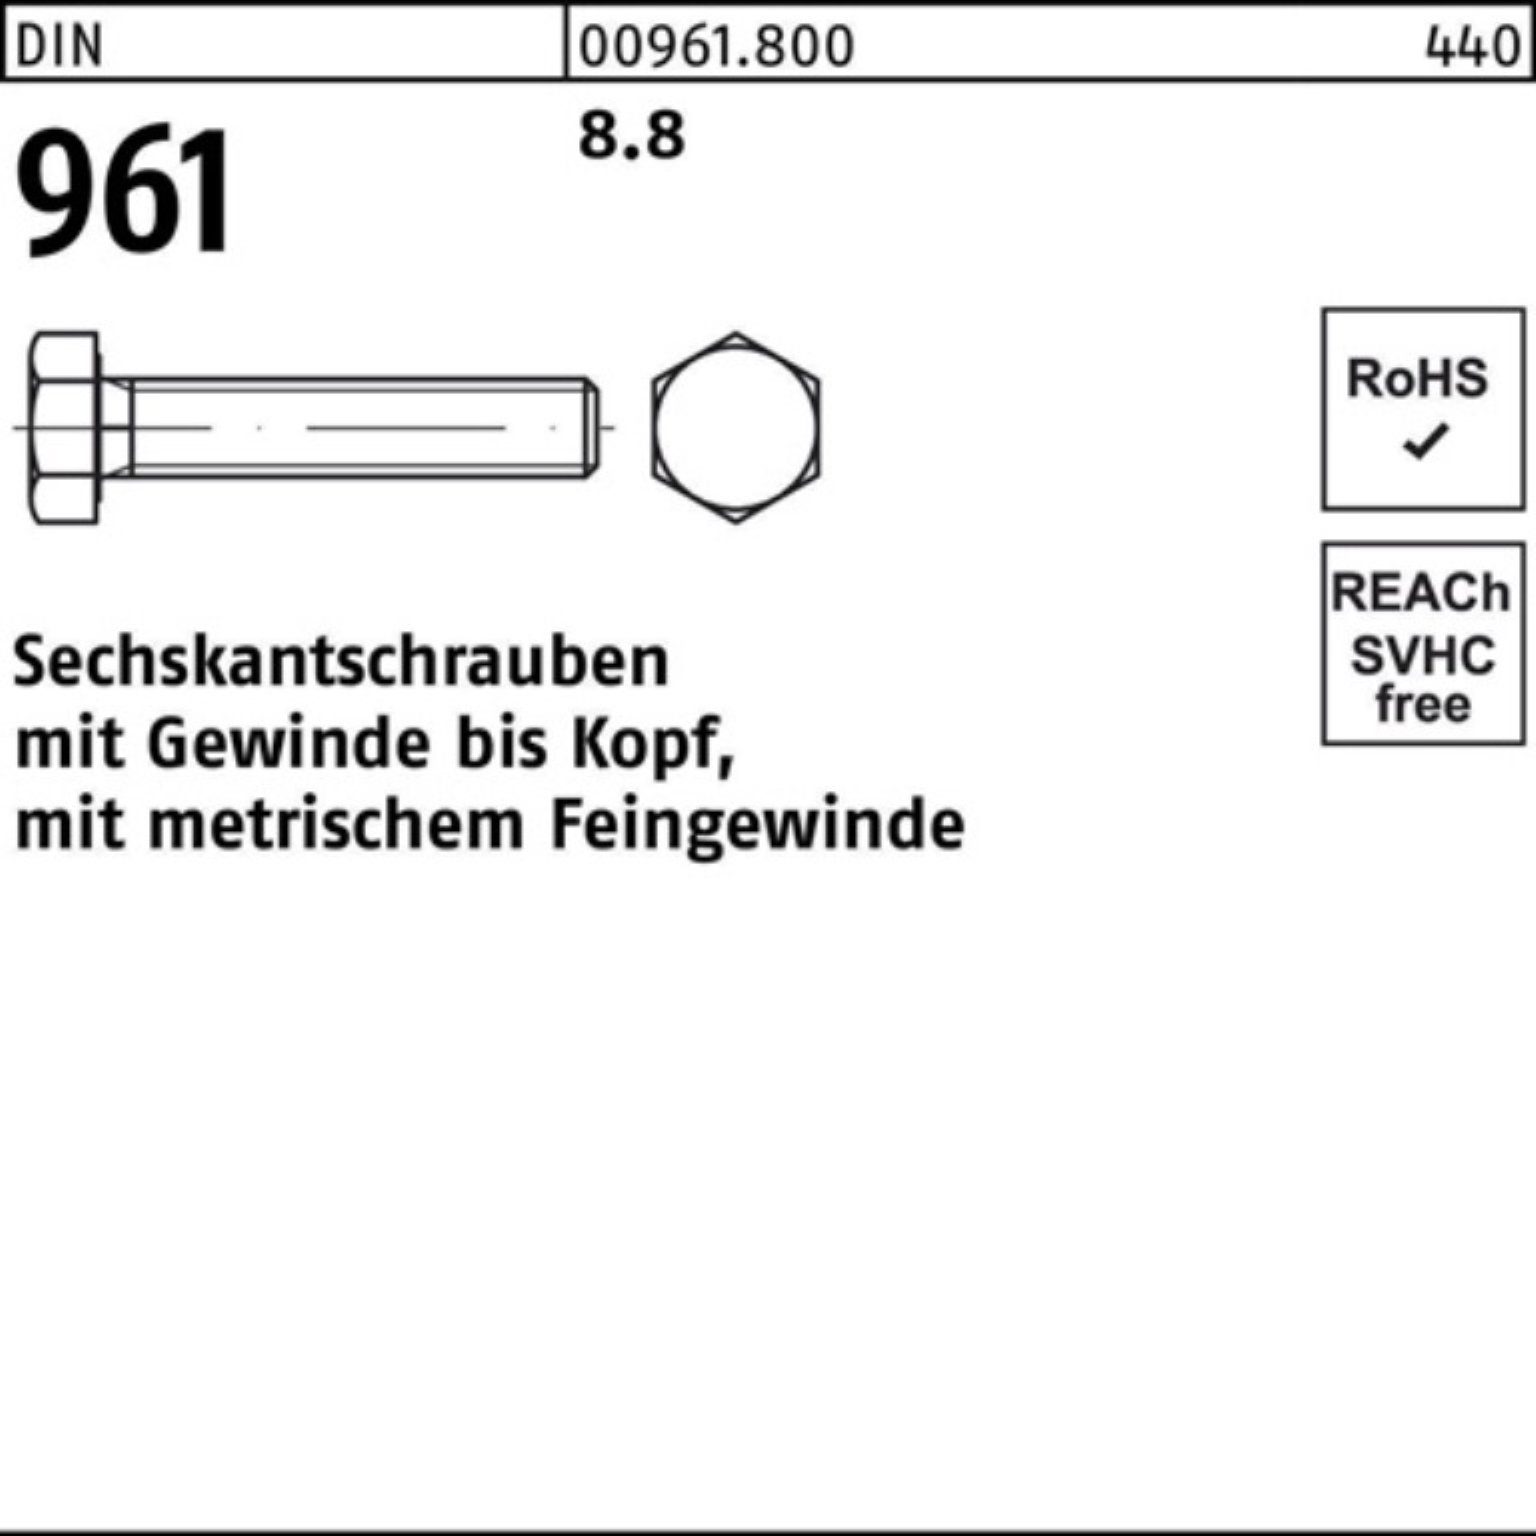 Reyher VG Sechskantschraube Pack 100 DIN 25 Sechskantschraube 961 M16x1,5x DIN 8.8 Stück 100er